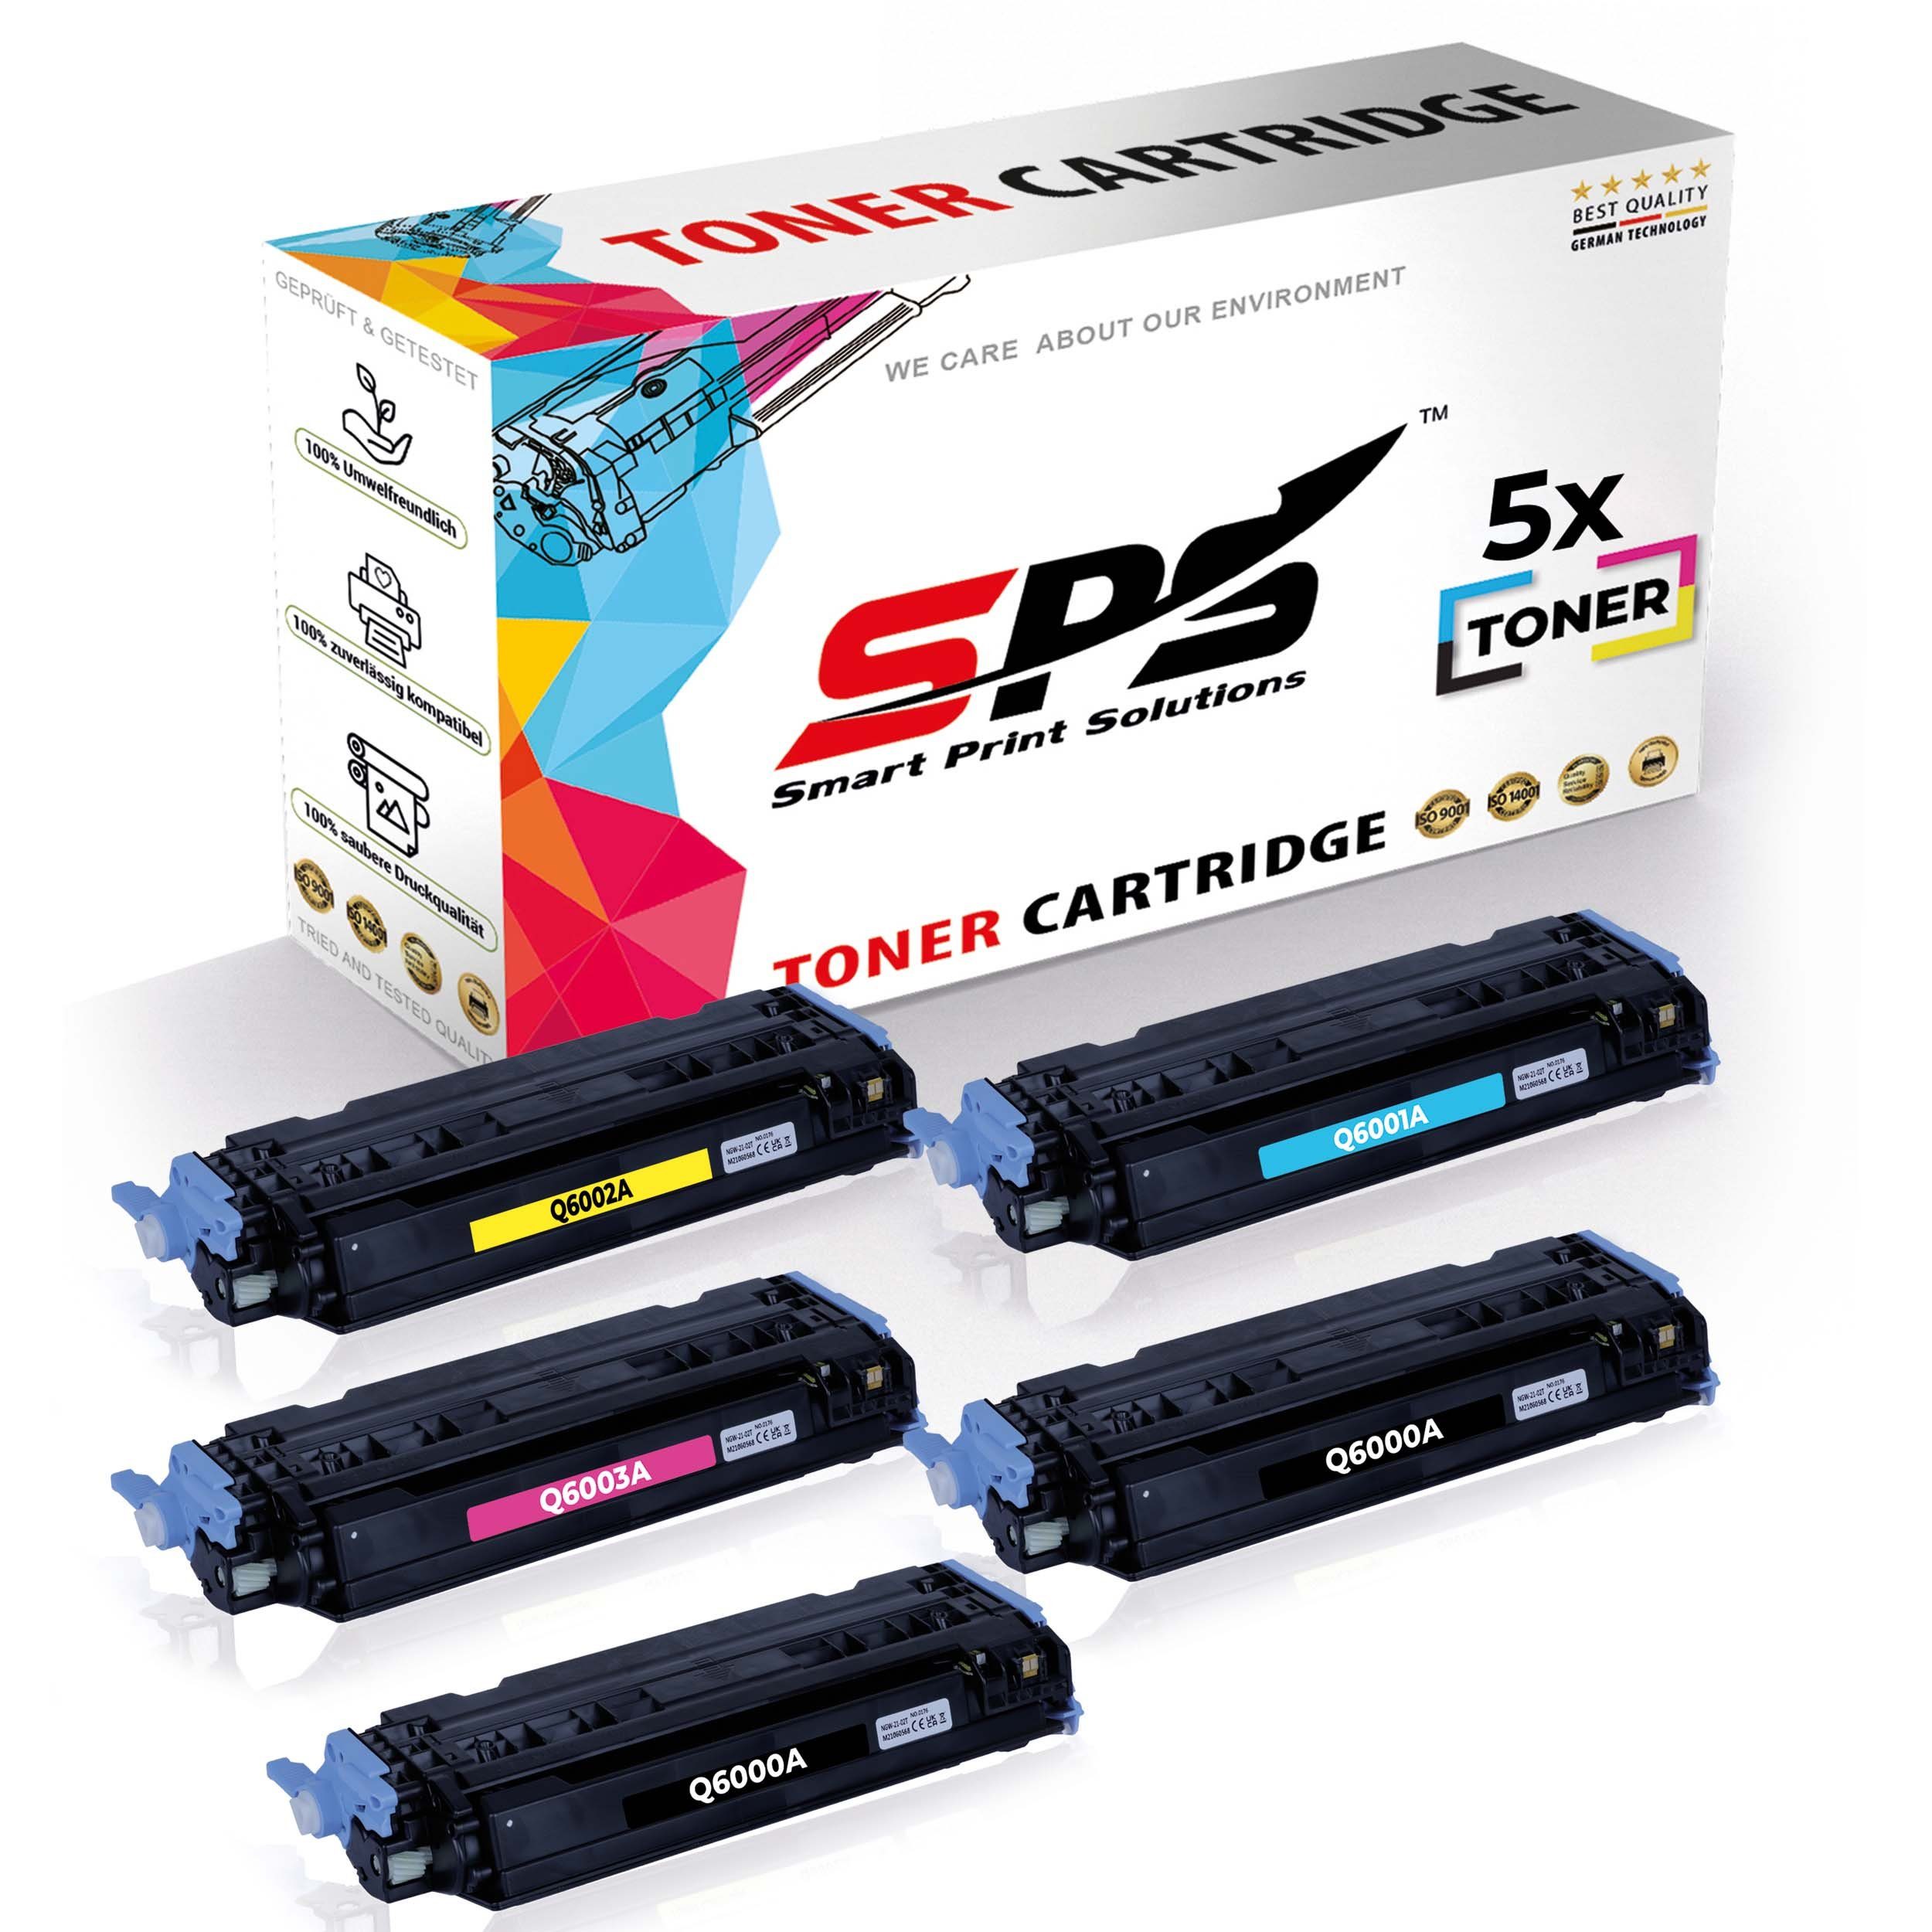 SPS Tonerkartusche für Multipack Pack, (5er 5x Color Toner) HP Kompatibel LaserJet, 5x Set